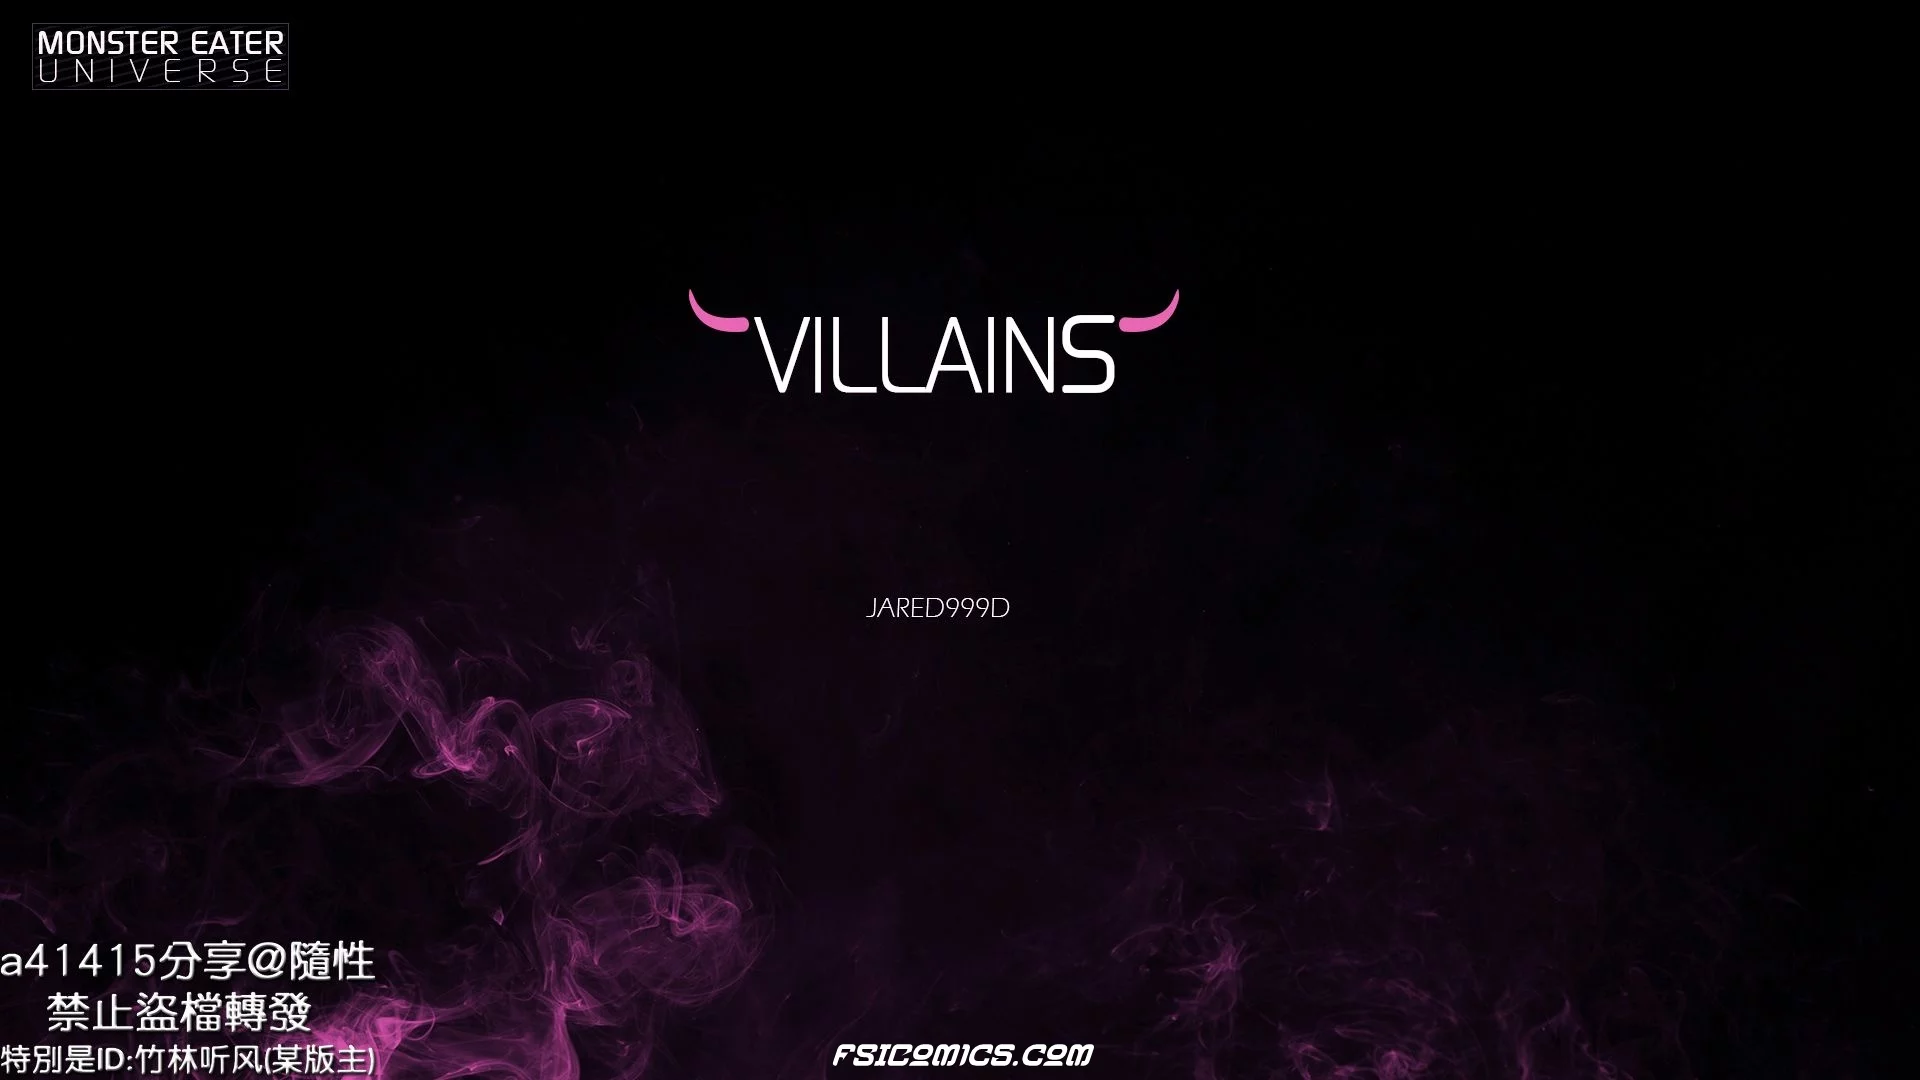 Villains Chapter 1 -Jared999D - 207 - FSIComics